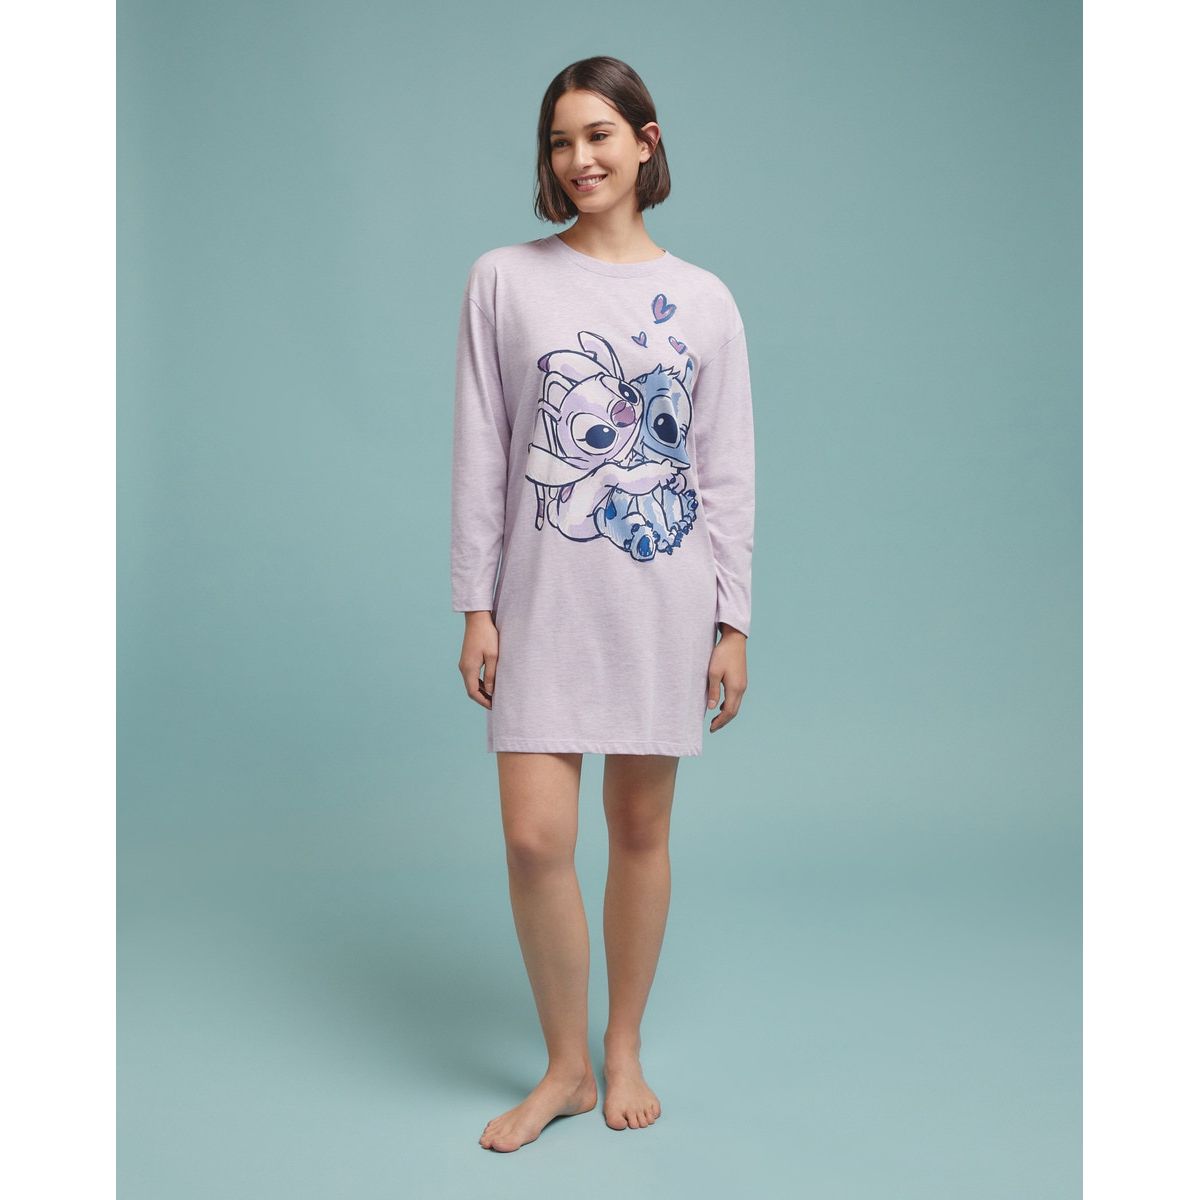 Ensemble pyjama enfant. Chemises et chemise Stitch 626 tissu design assorti  chemise de nuit maman et couverture